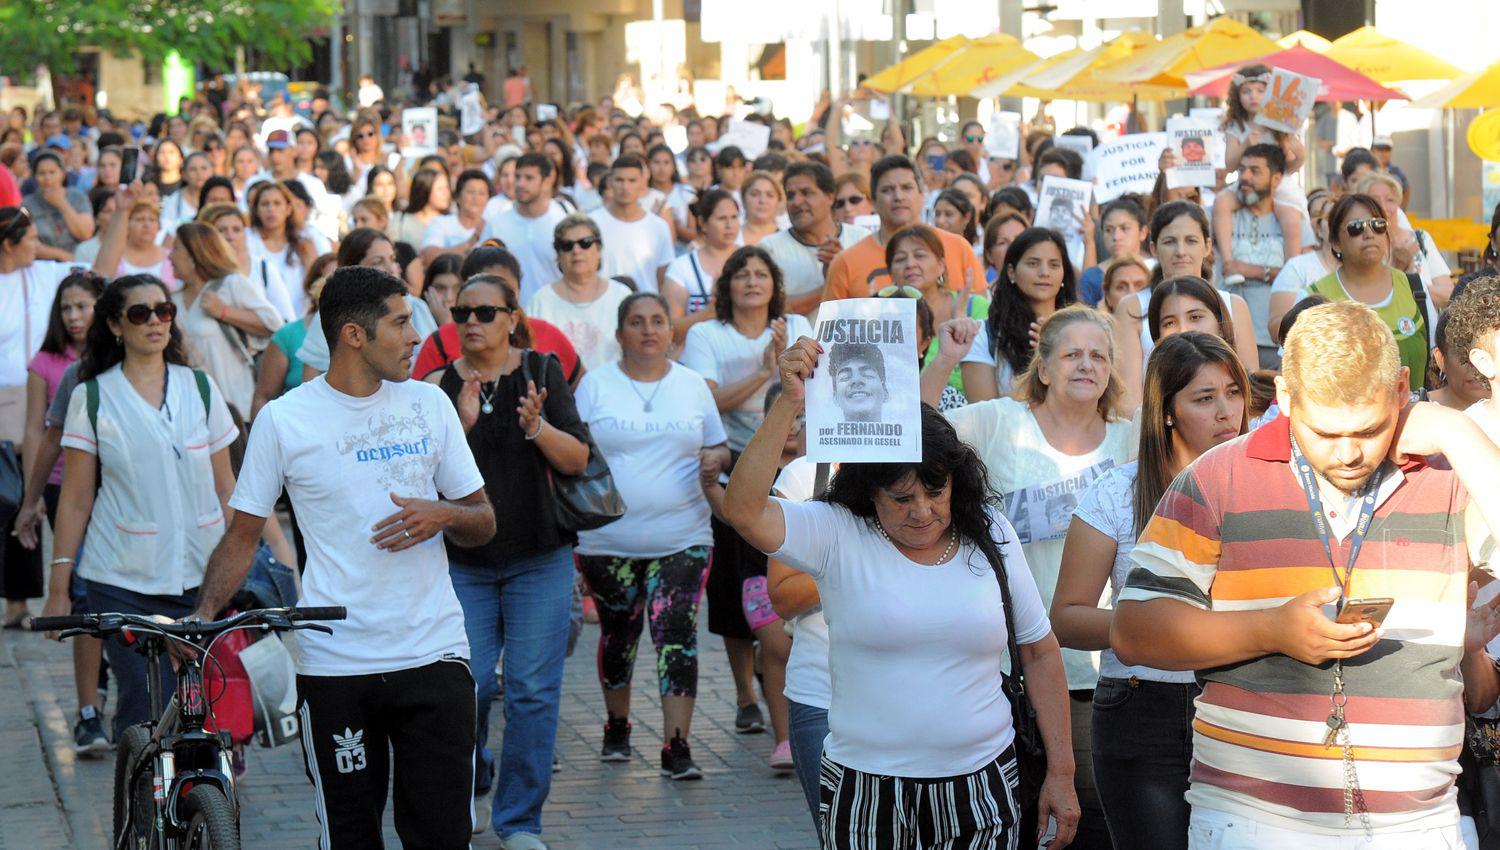 La marcha congregó a un gran n�mero de personas Fotos- Tom�s Marini-EL LIBERAL